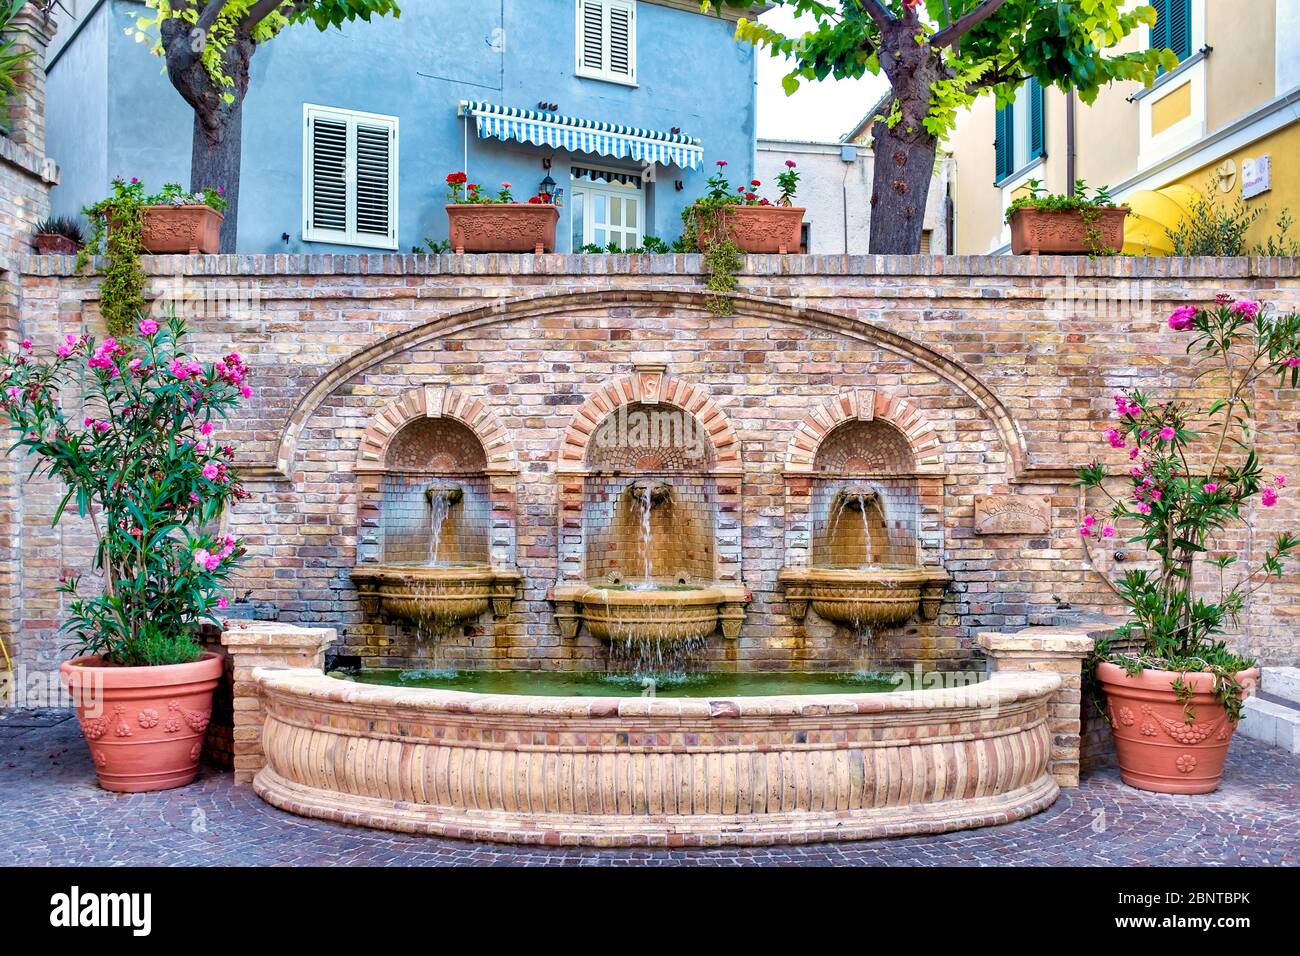 Fontaine dans le centre historique de Silvi Paese, Abruzzes, Italie Banque D'Images